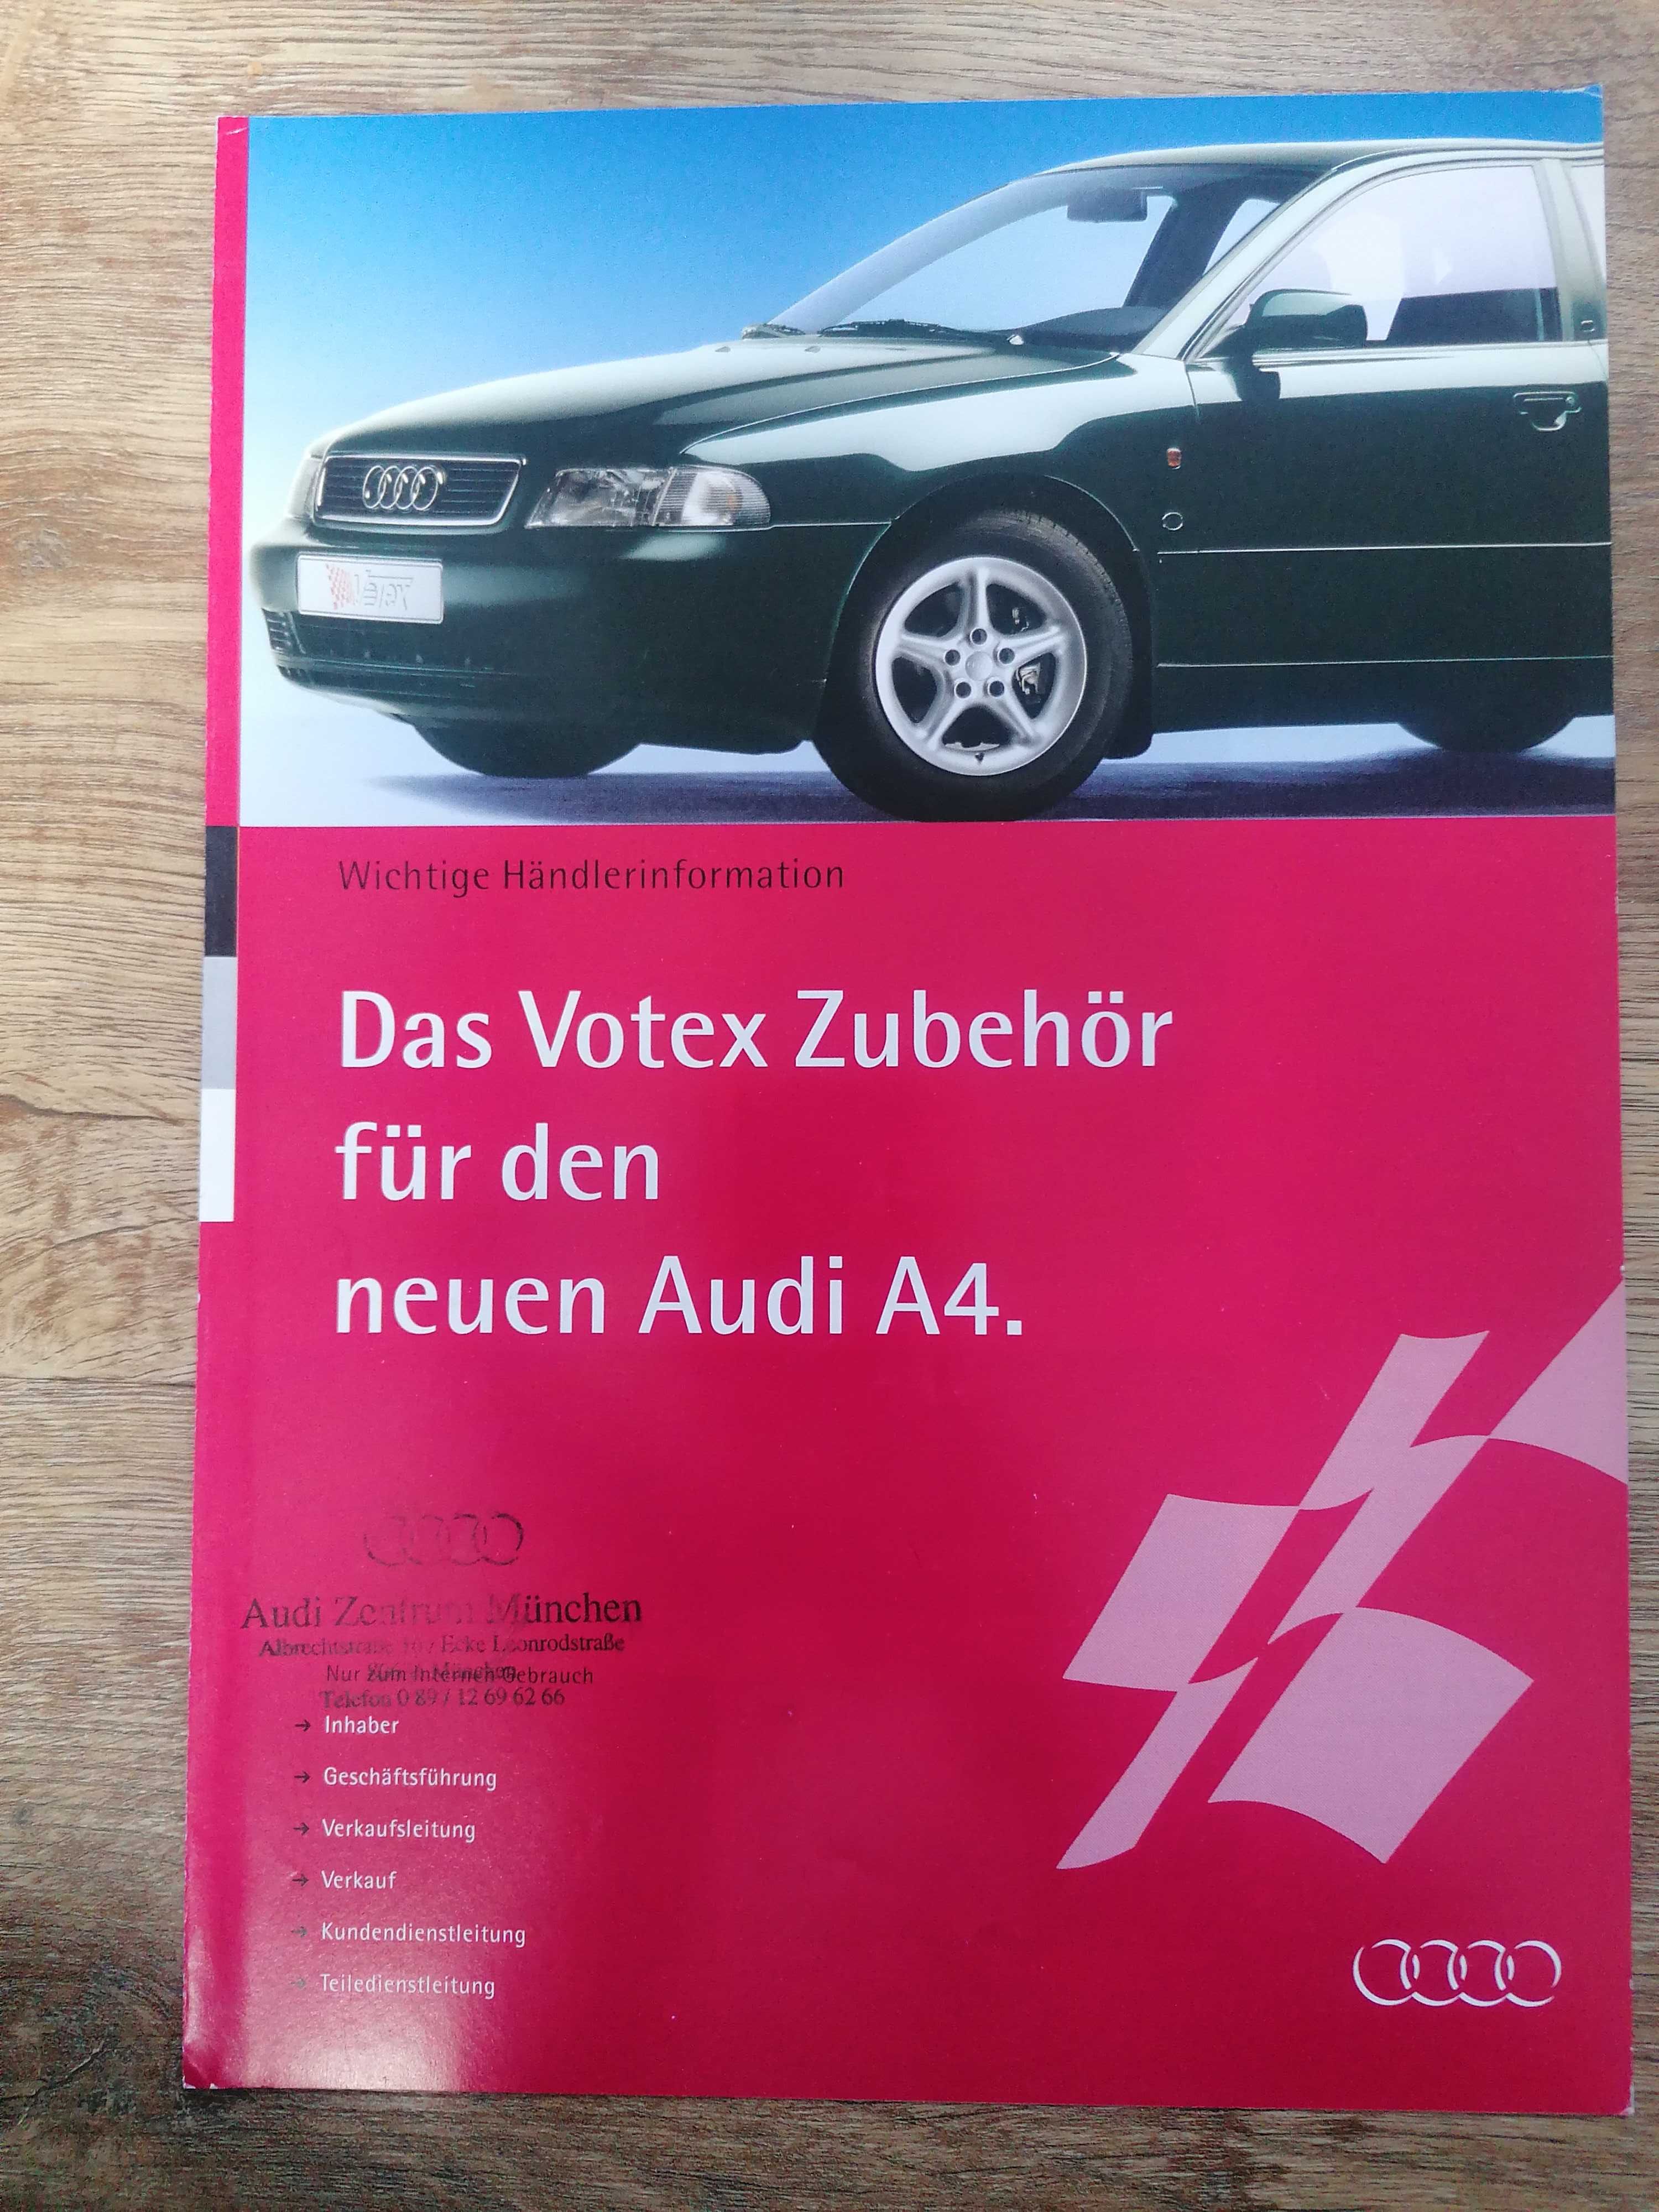 Prospekt Audi A4 Votex wyposażenie dodatkowe.